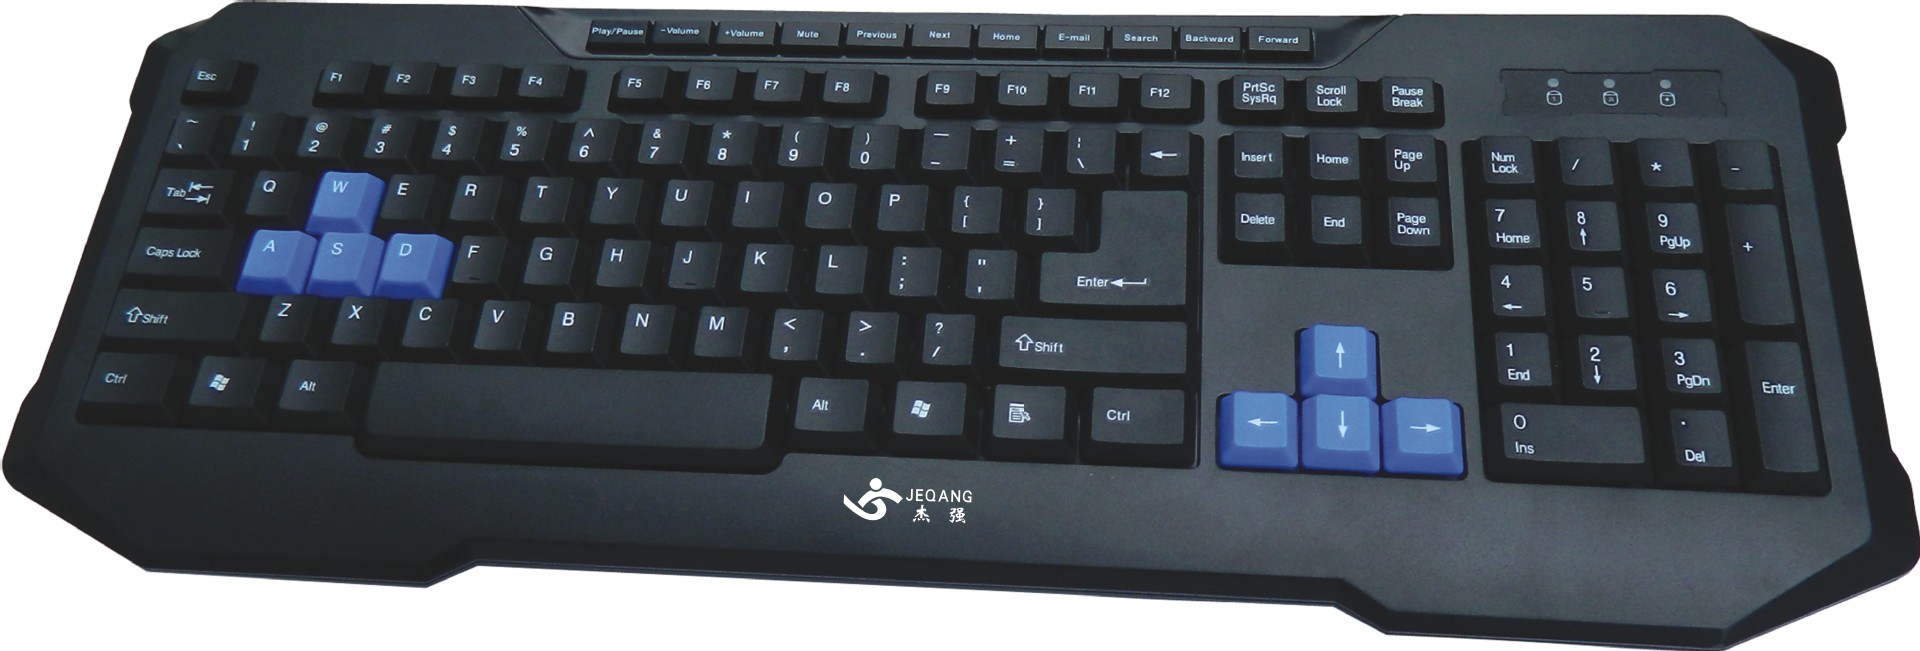 新款杰强键盘jk-911usb有线游戏商务办公带多媒体与8个游戏键盘位